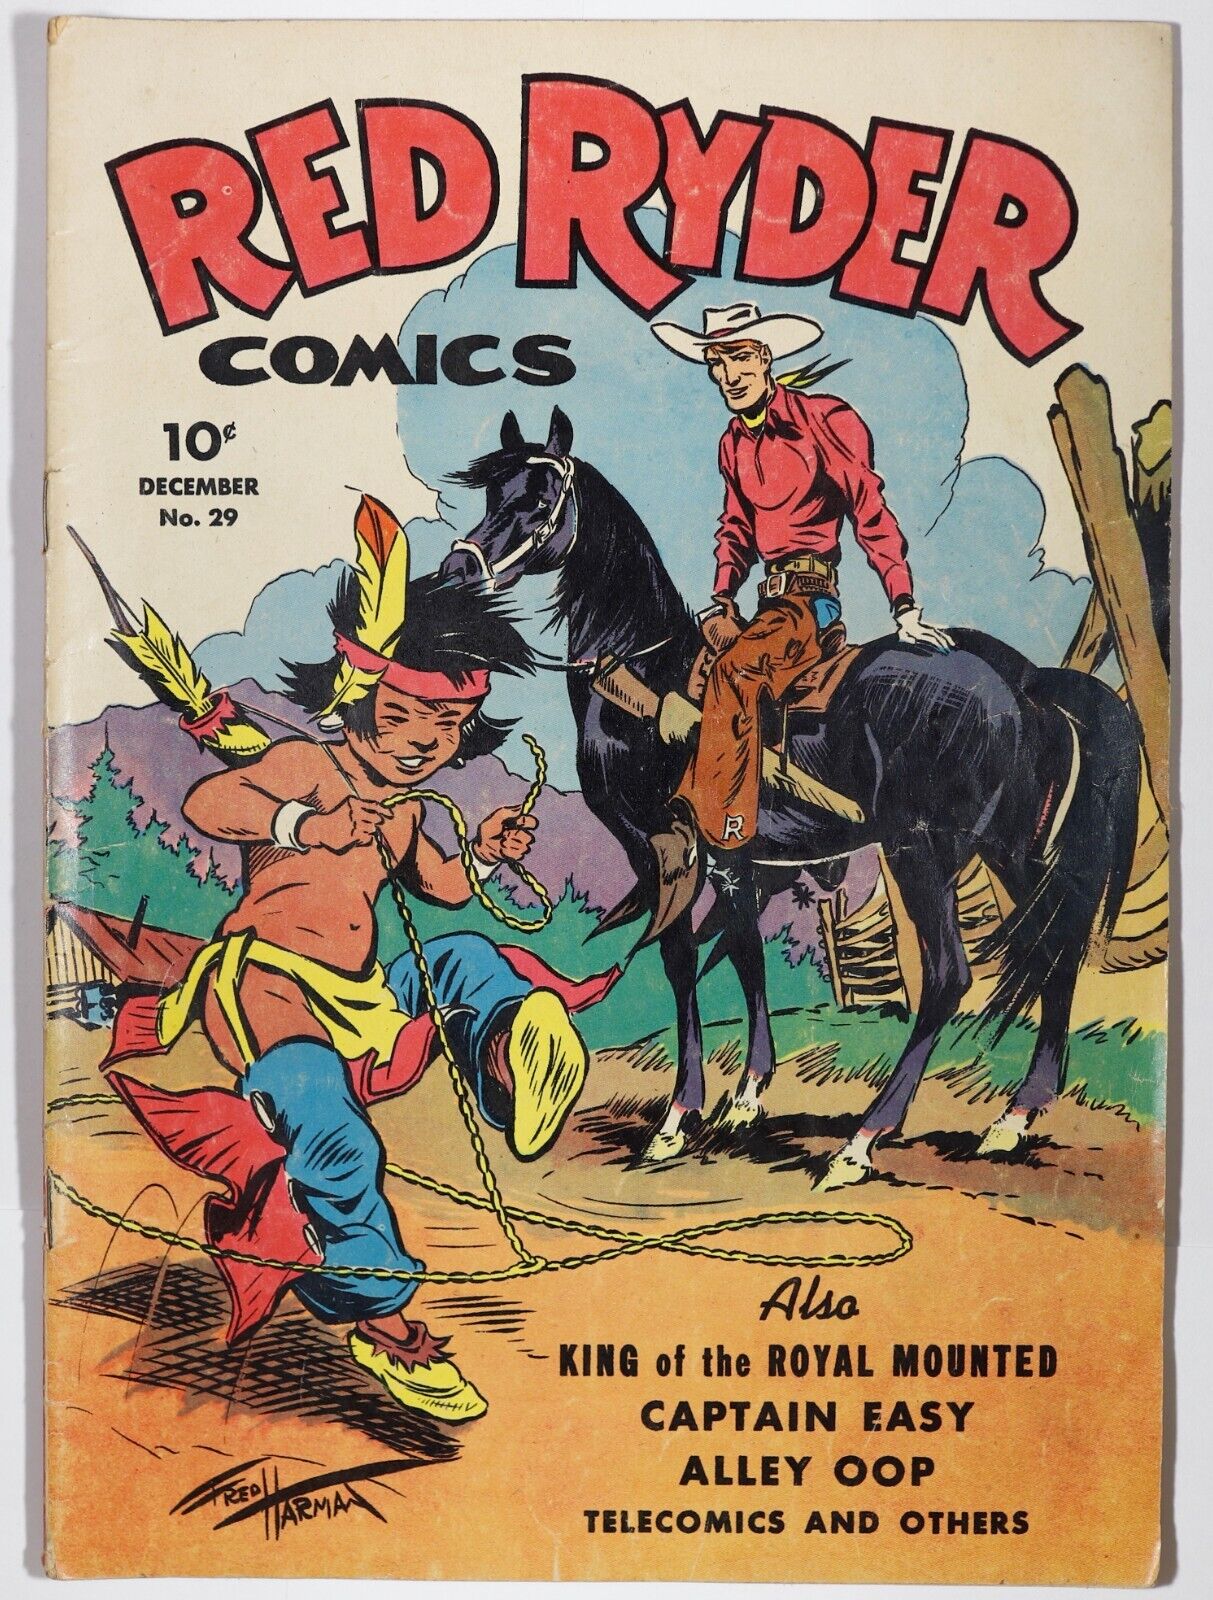 Red Ryder Comics #29 - $0.10 K & K Pub., Dec. 1945 - VG